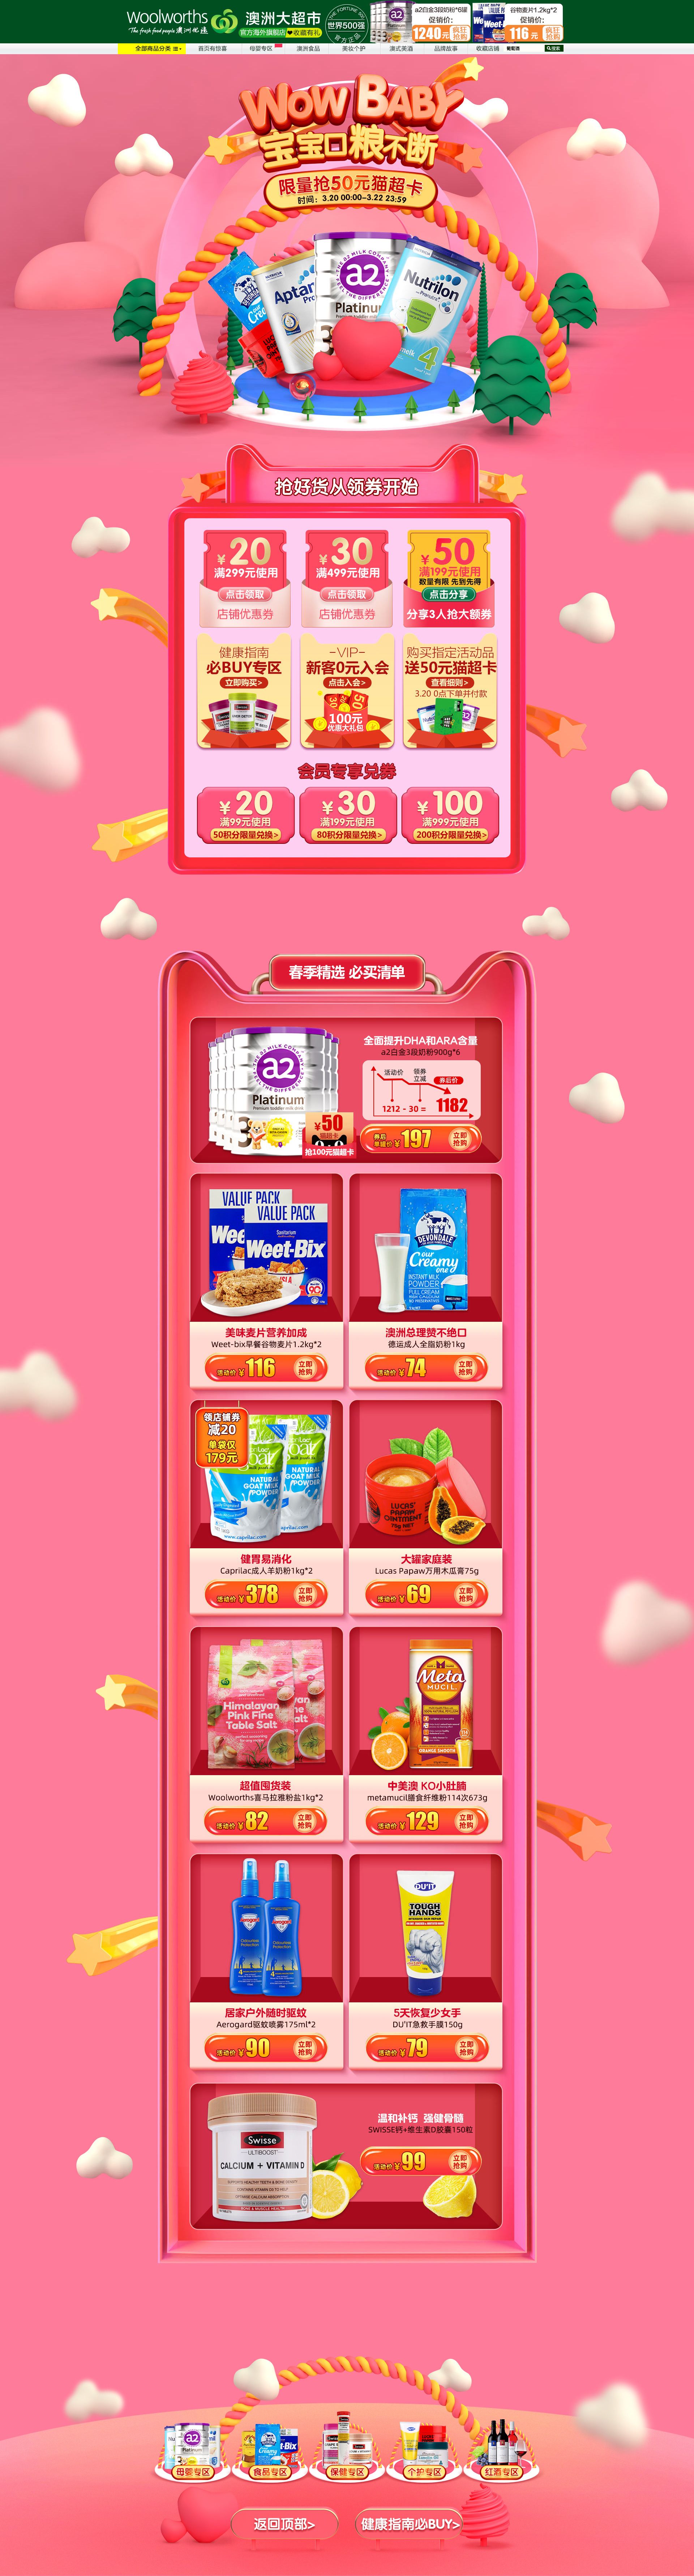 Woolworths澳洲大超市母婴奶粉用品页面设计